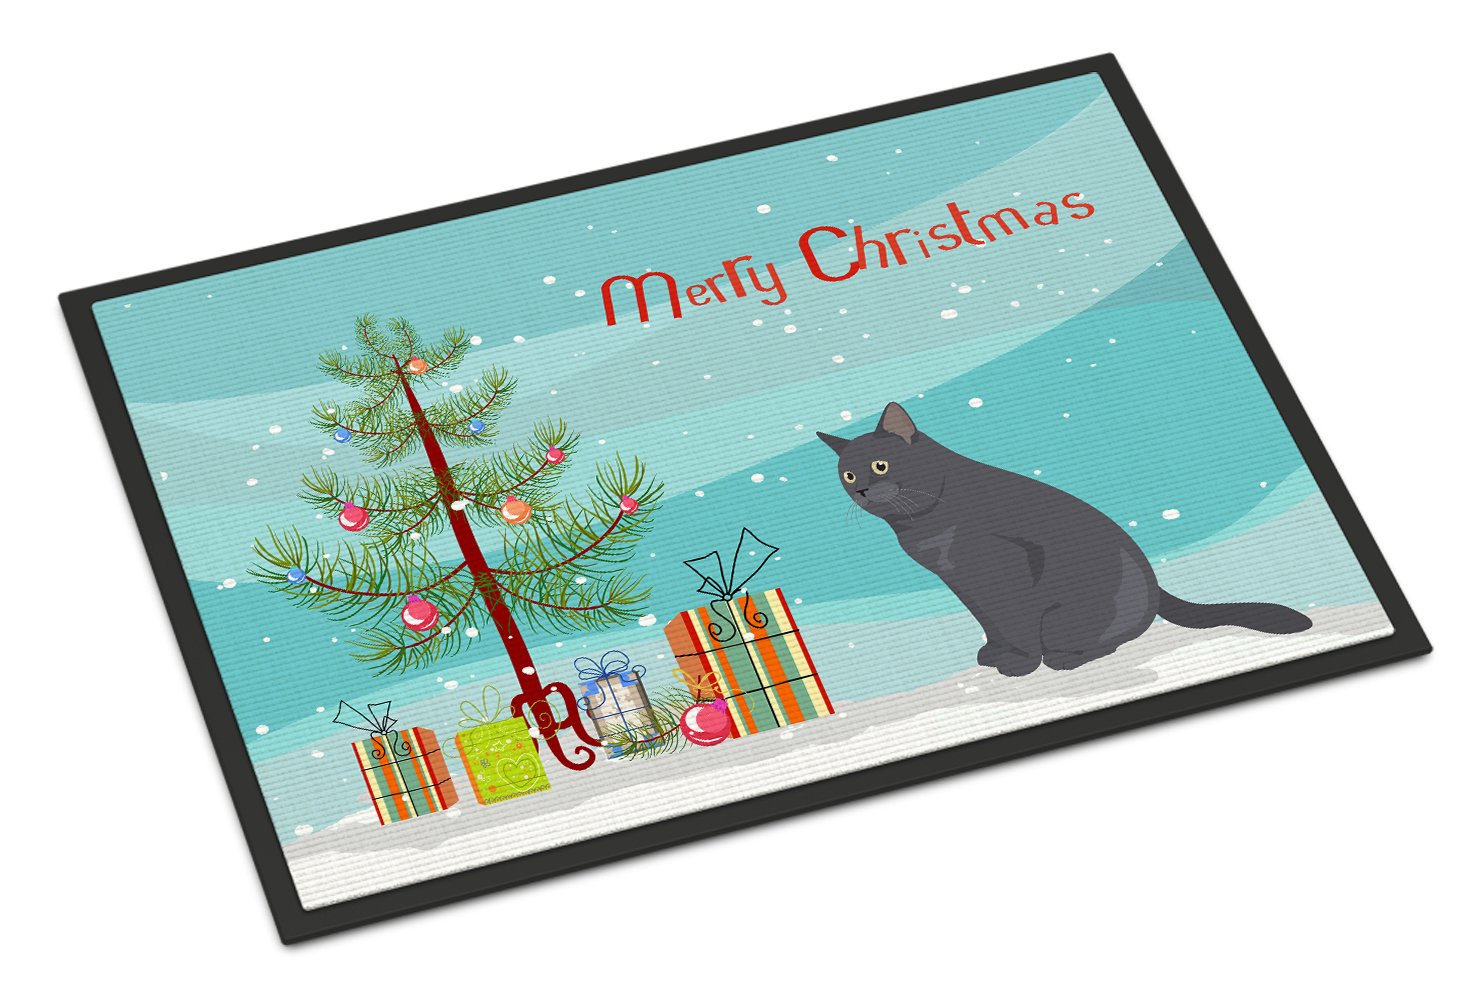 British Shorthair #1 Cat Merry Christmas Indoor or Outdoor Mat 24x36 CK4751JMAT by Caroline's Treasures